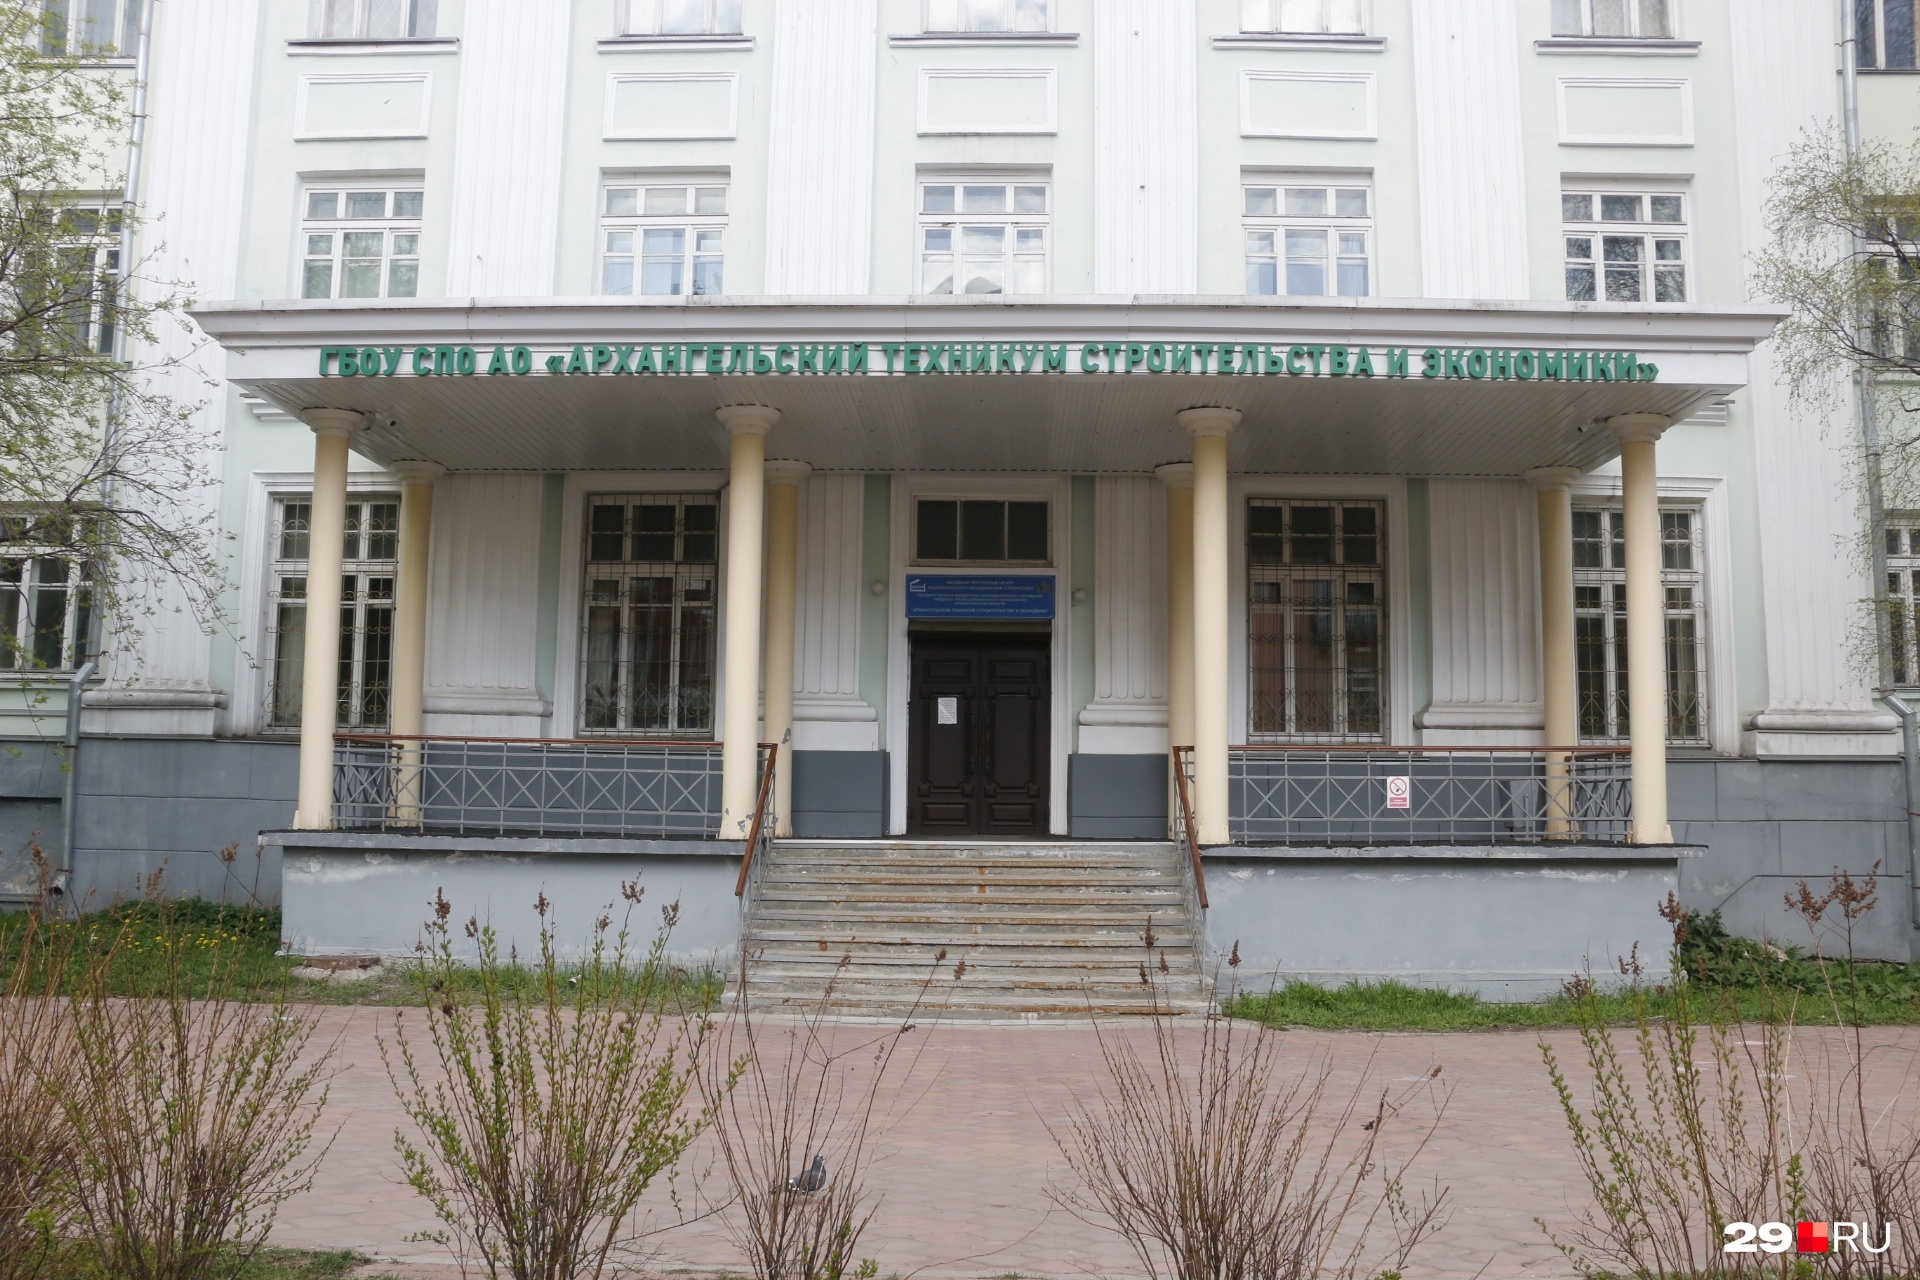 А это здание стоит в центре Архангельска, на проспекте Чумбарова-Лучинского